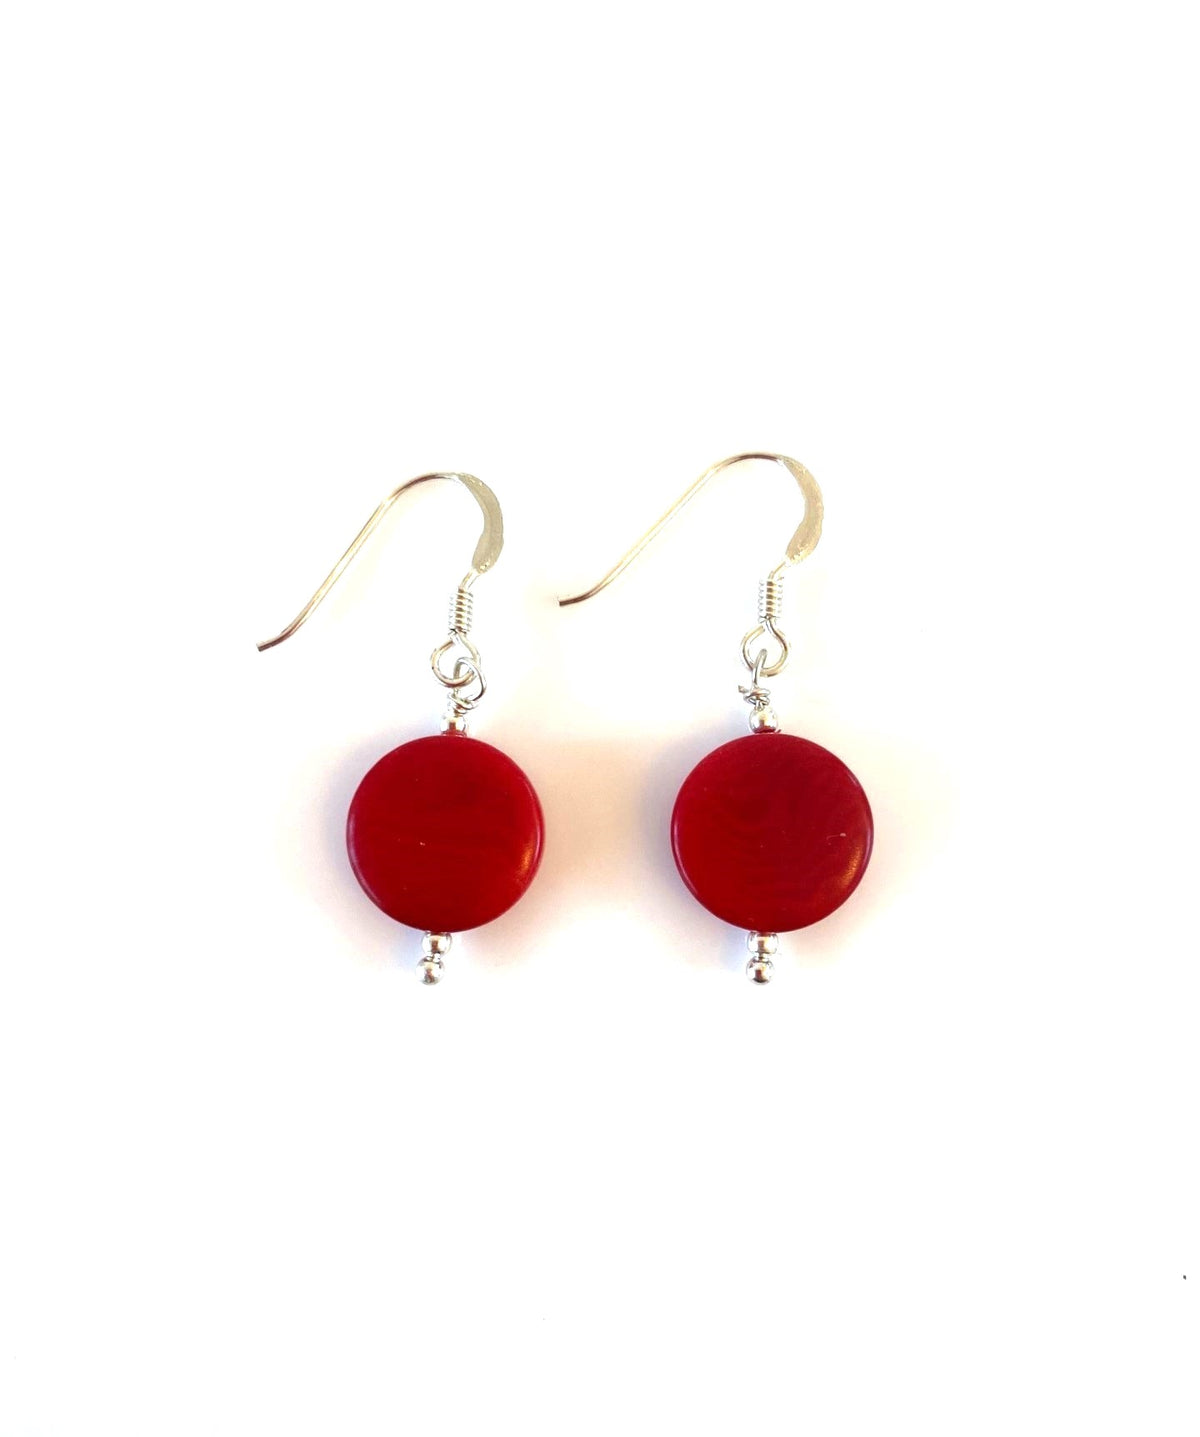 Andrea earrings - Red